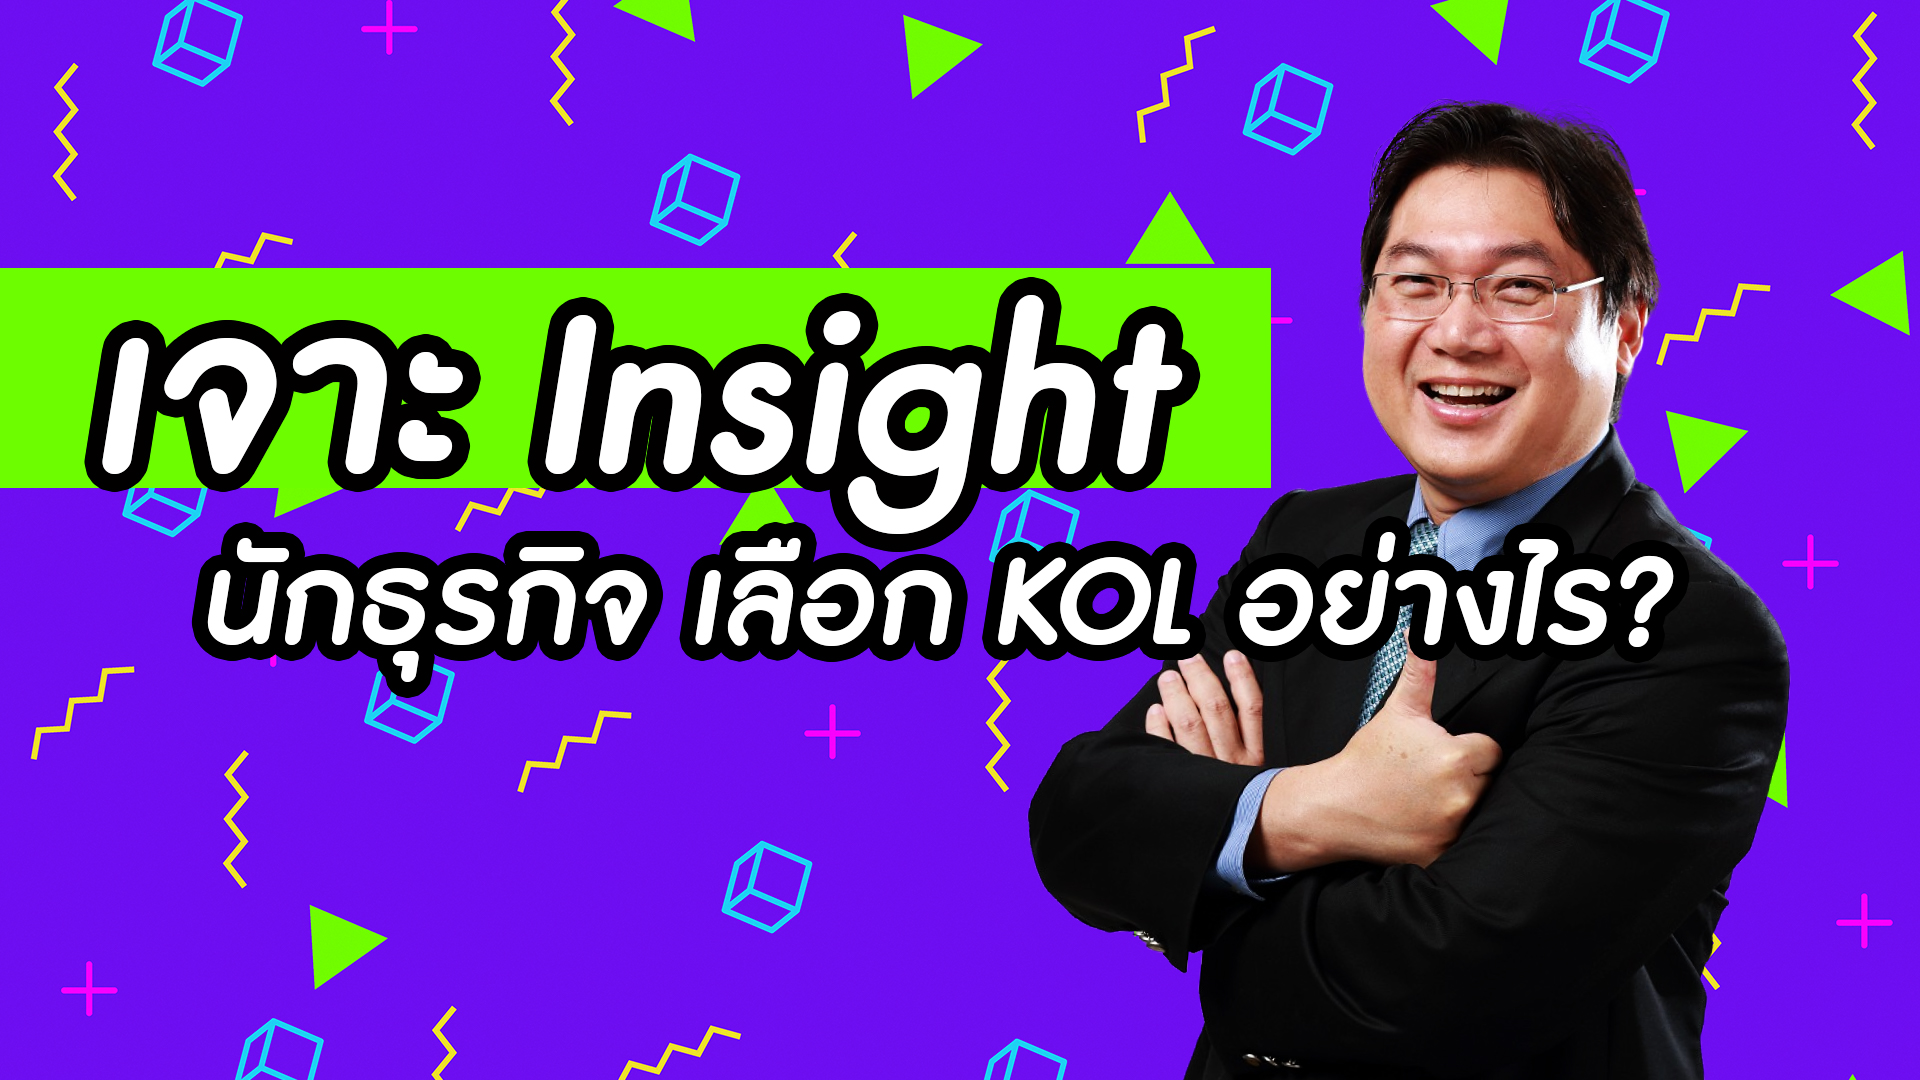 Insight for KOL